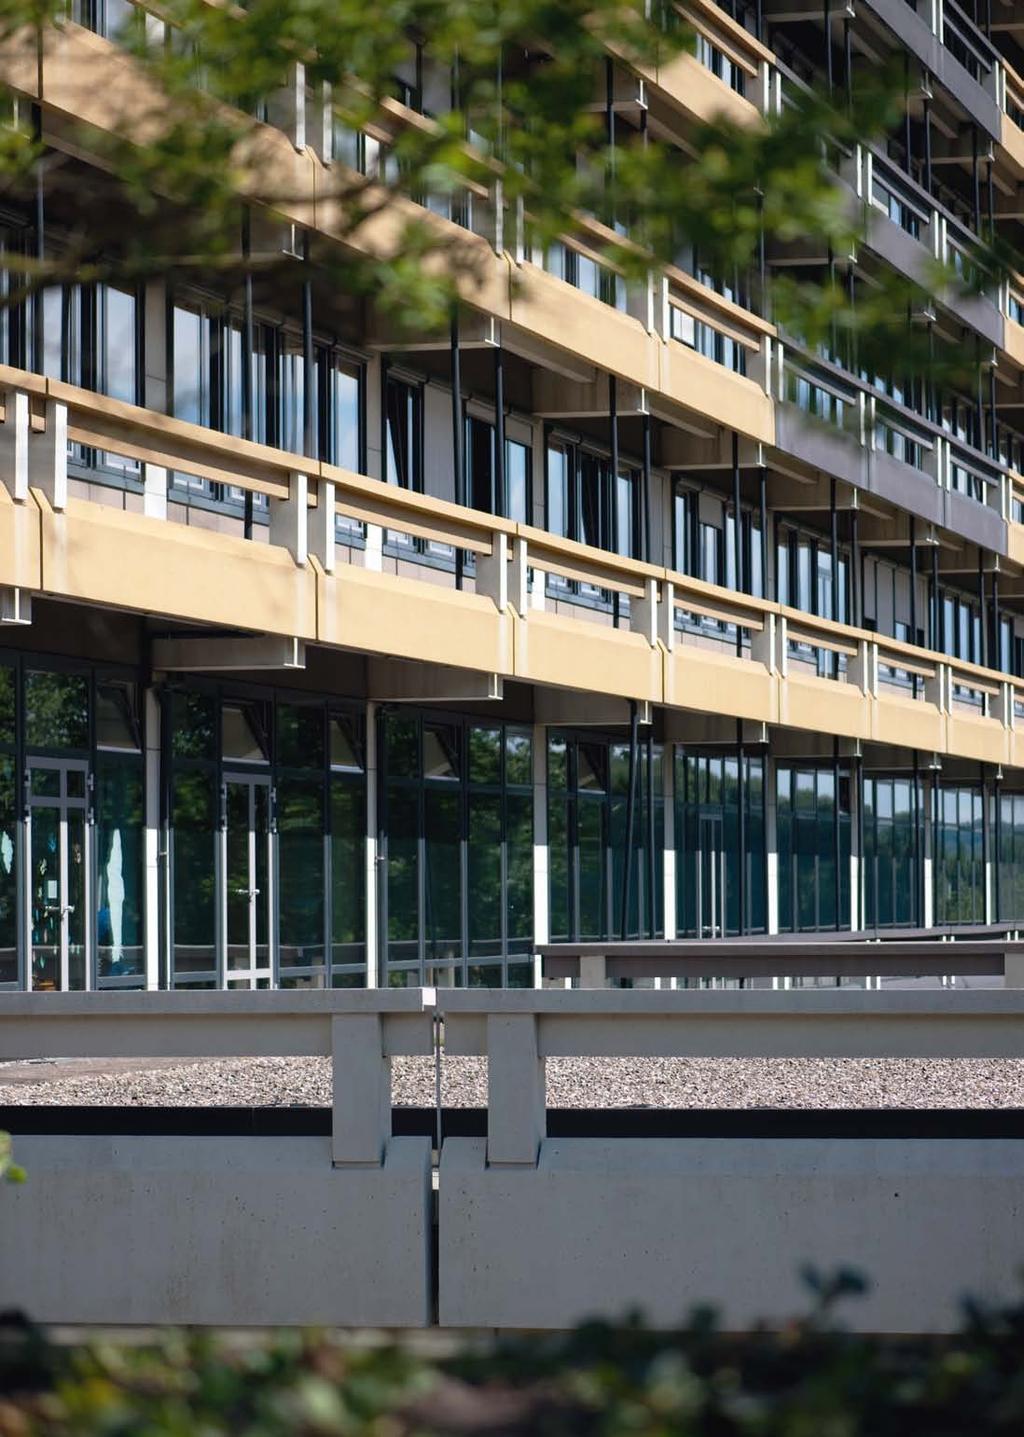 01 startschuss für Die campussanierung Im April 2007 gab die Landesregierung Nordrhein-Westfalen grünes Licht für die umfassende Sanierung des Campus.